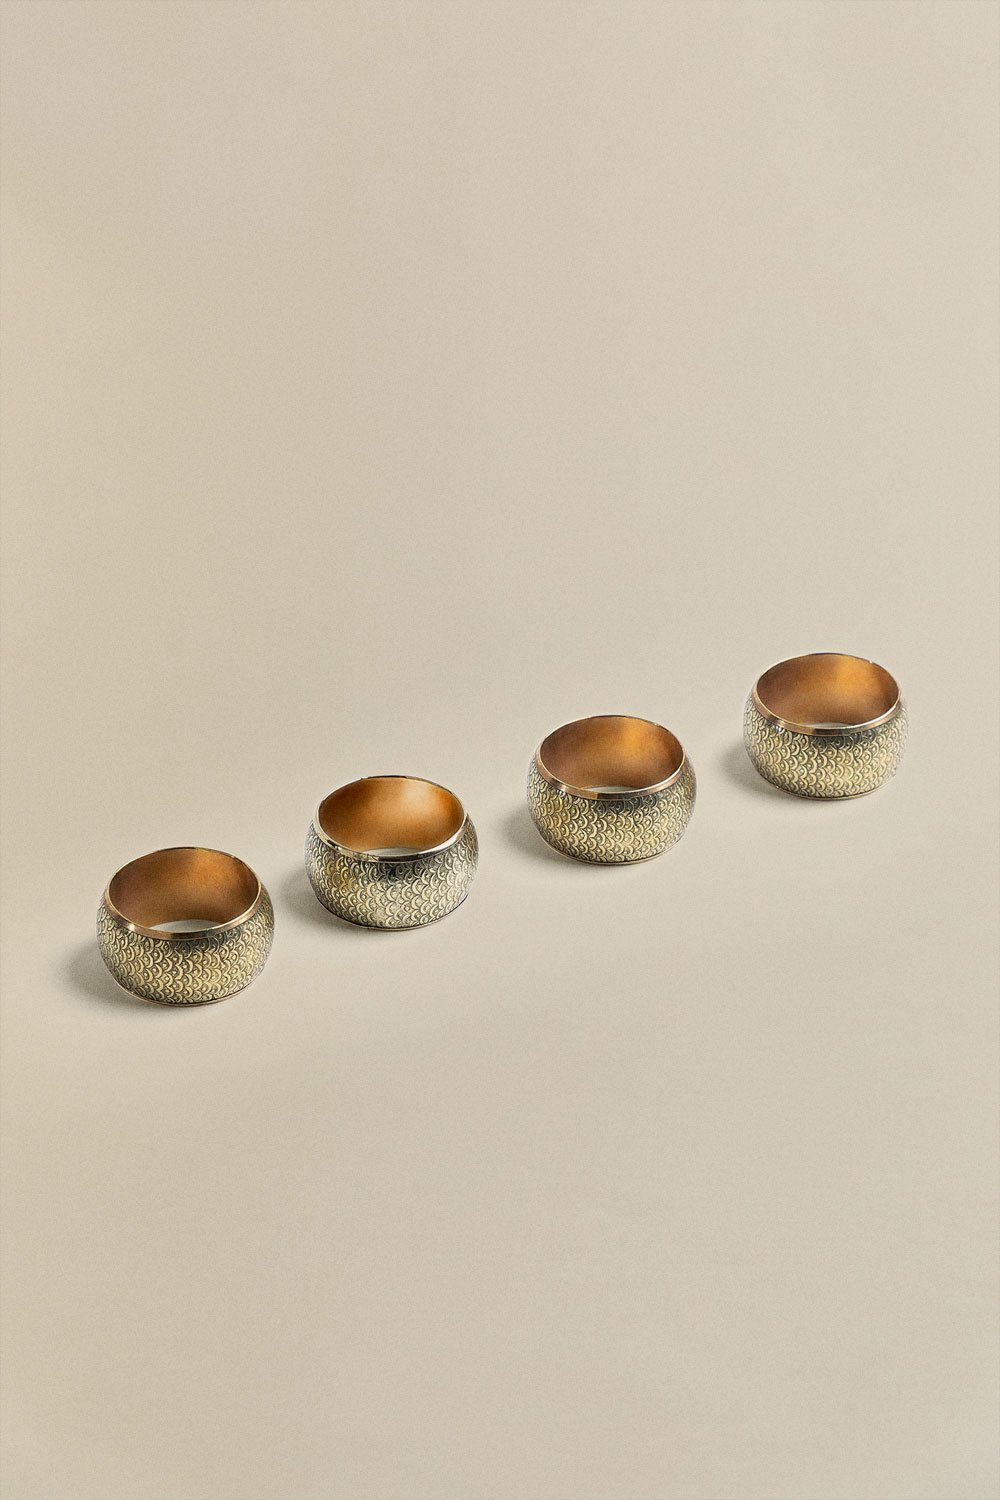 Zauli set of 4 metal servillete rings, gallery image 1